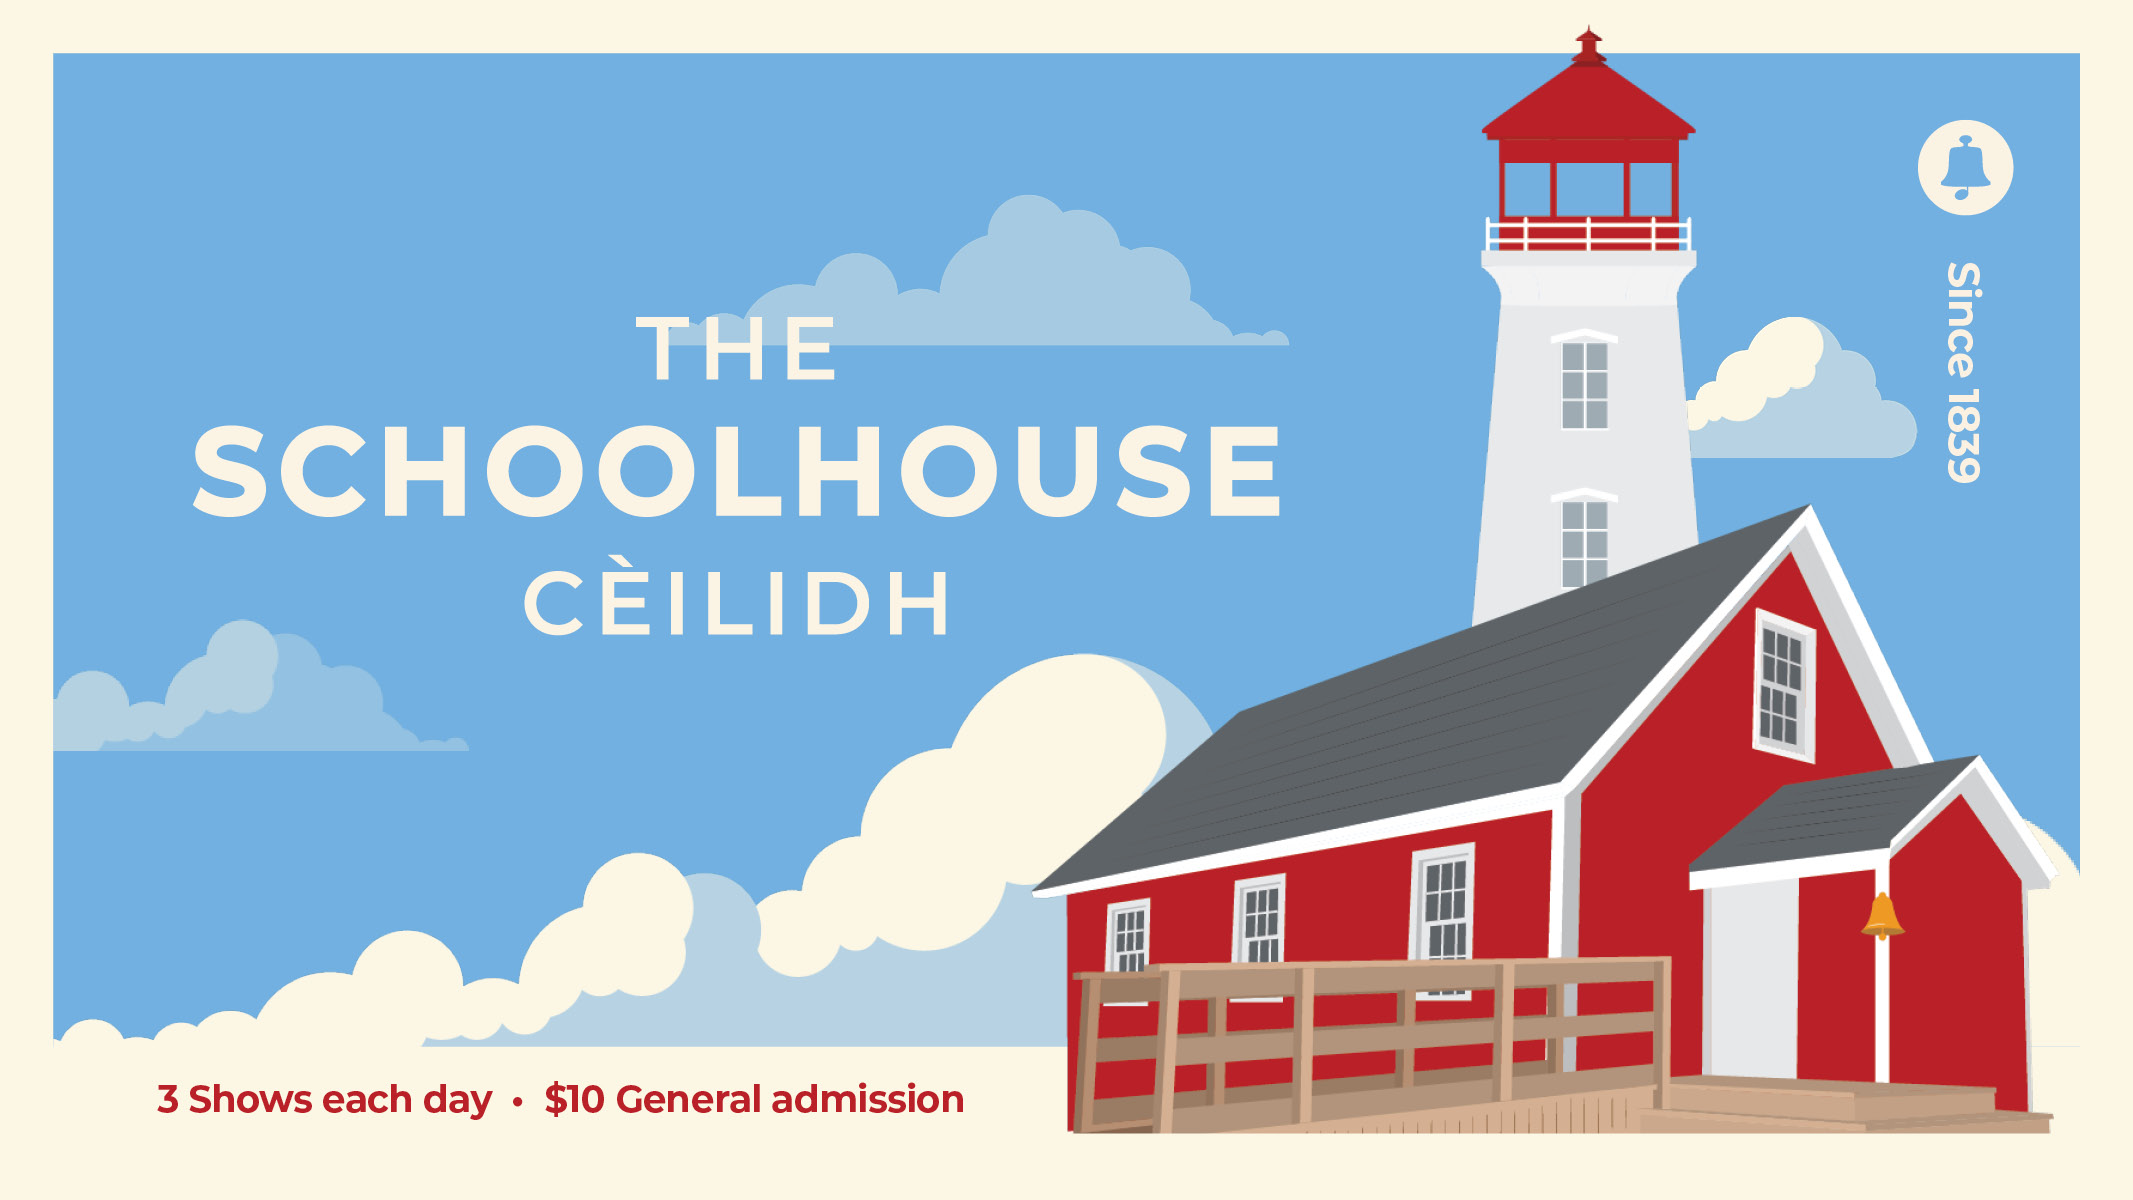 The Schoolhouse Cèilidh